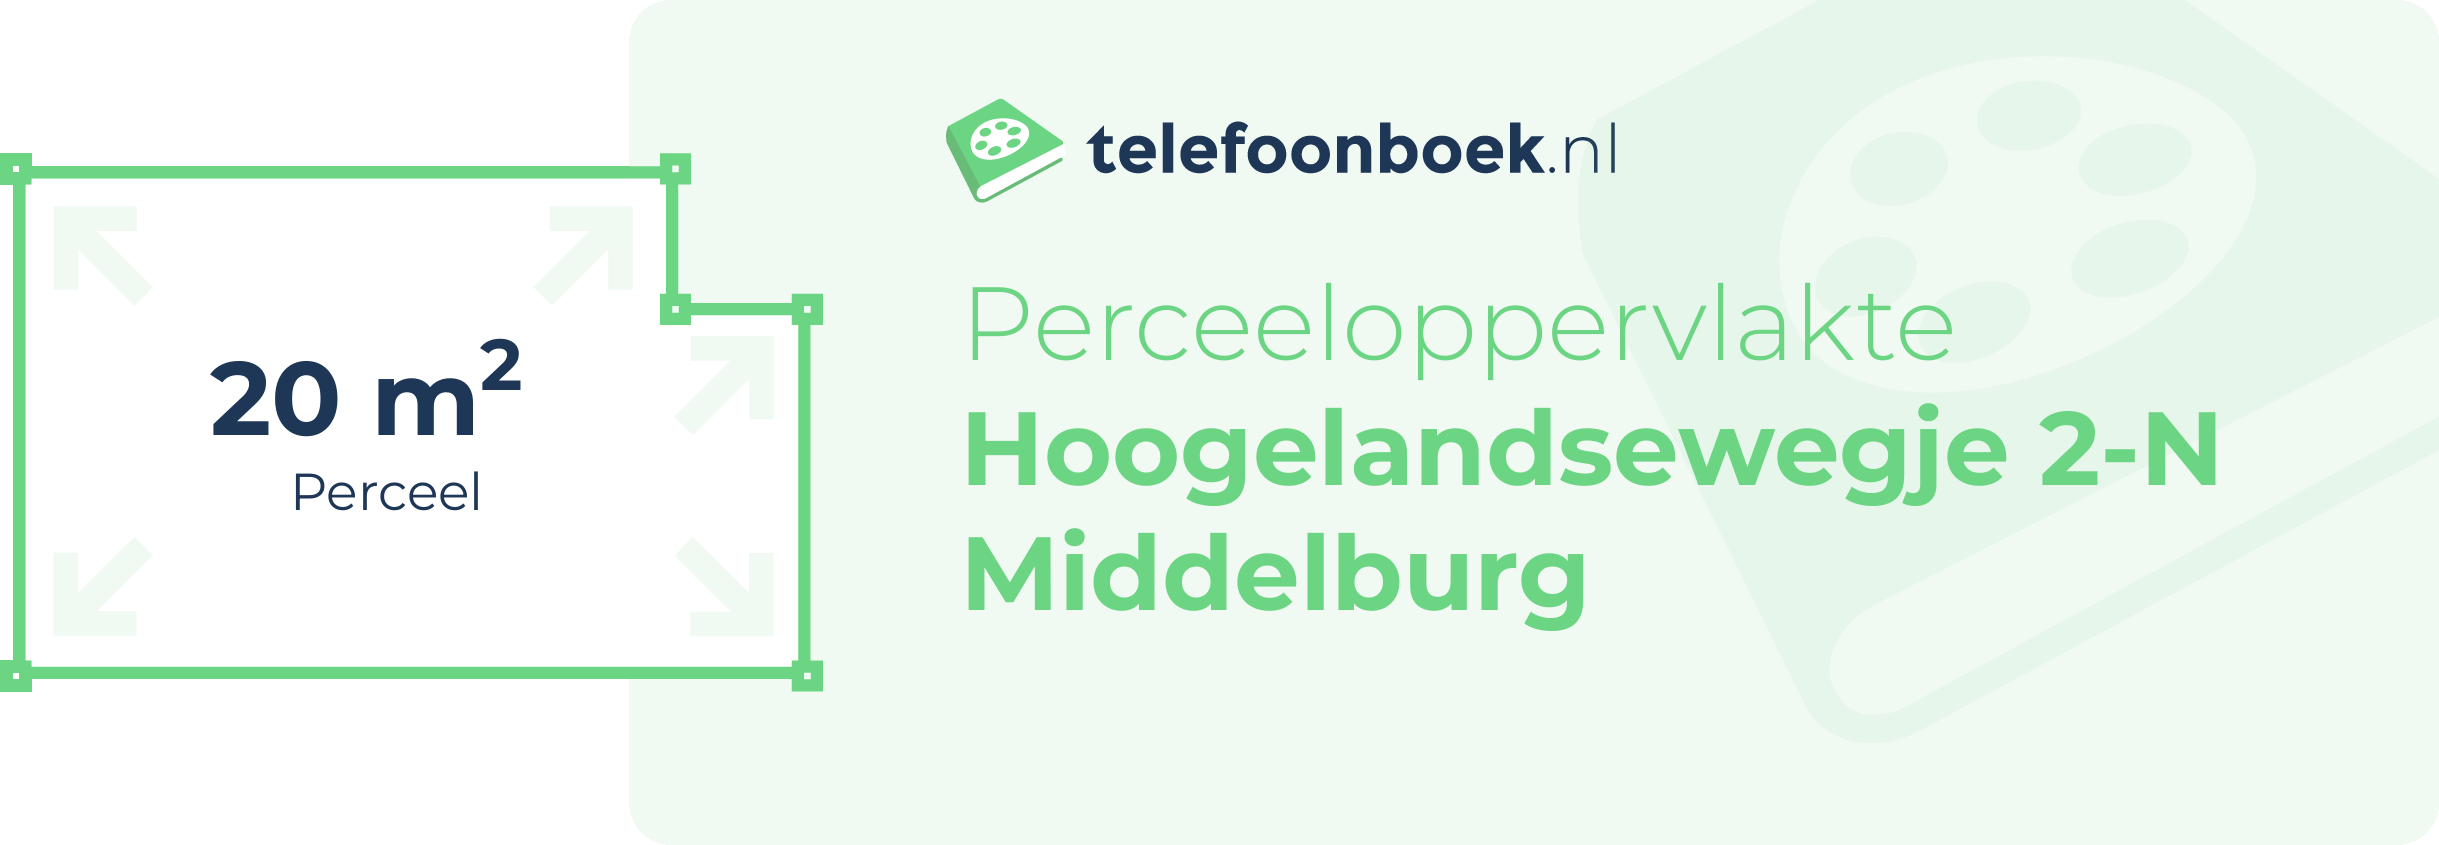 Perceeloppervlakte Hoogelandsewegje 2-N Middelburg